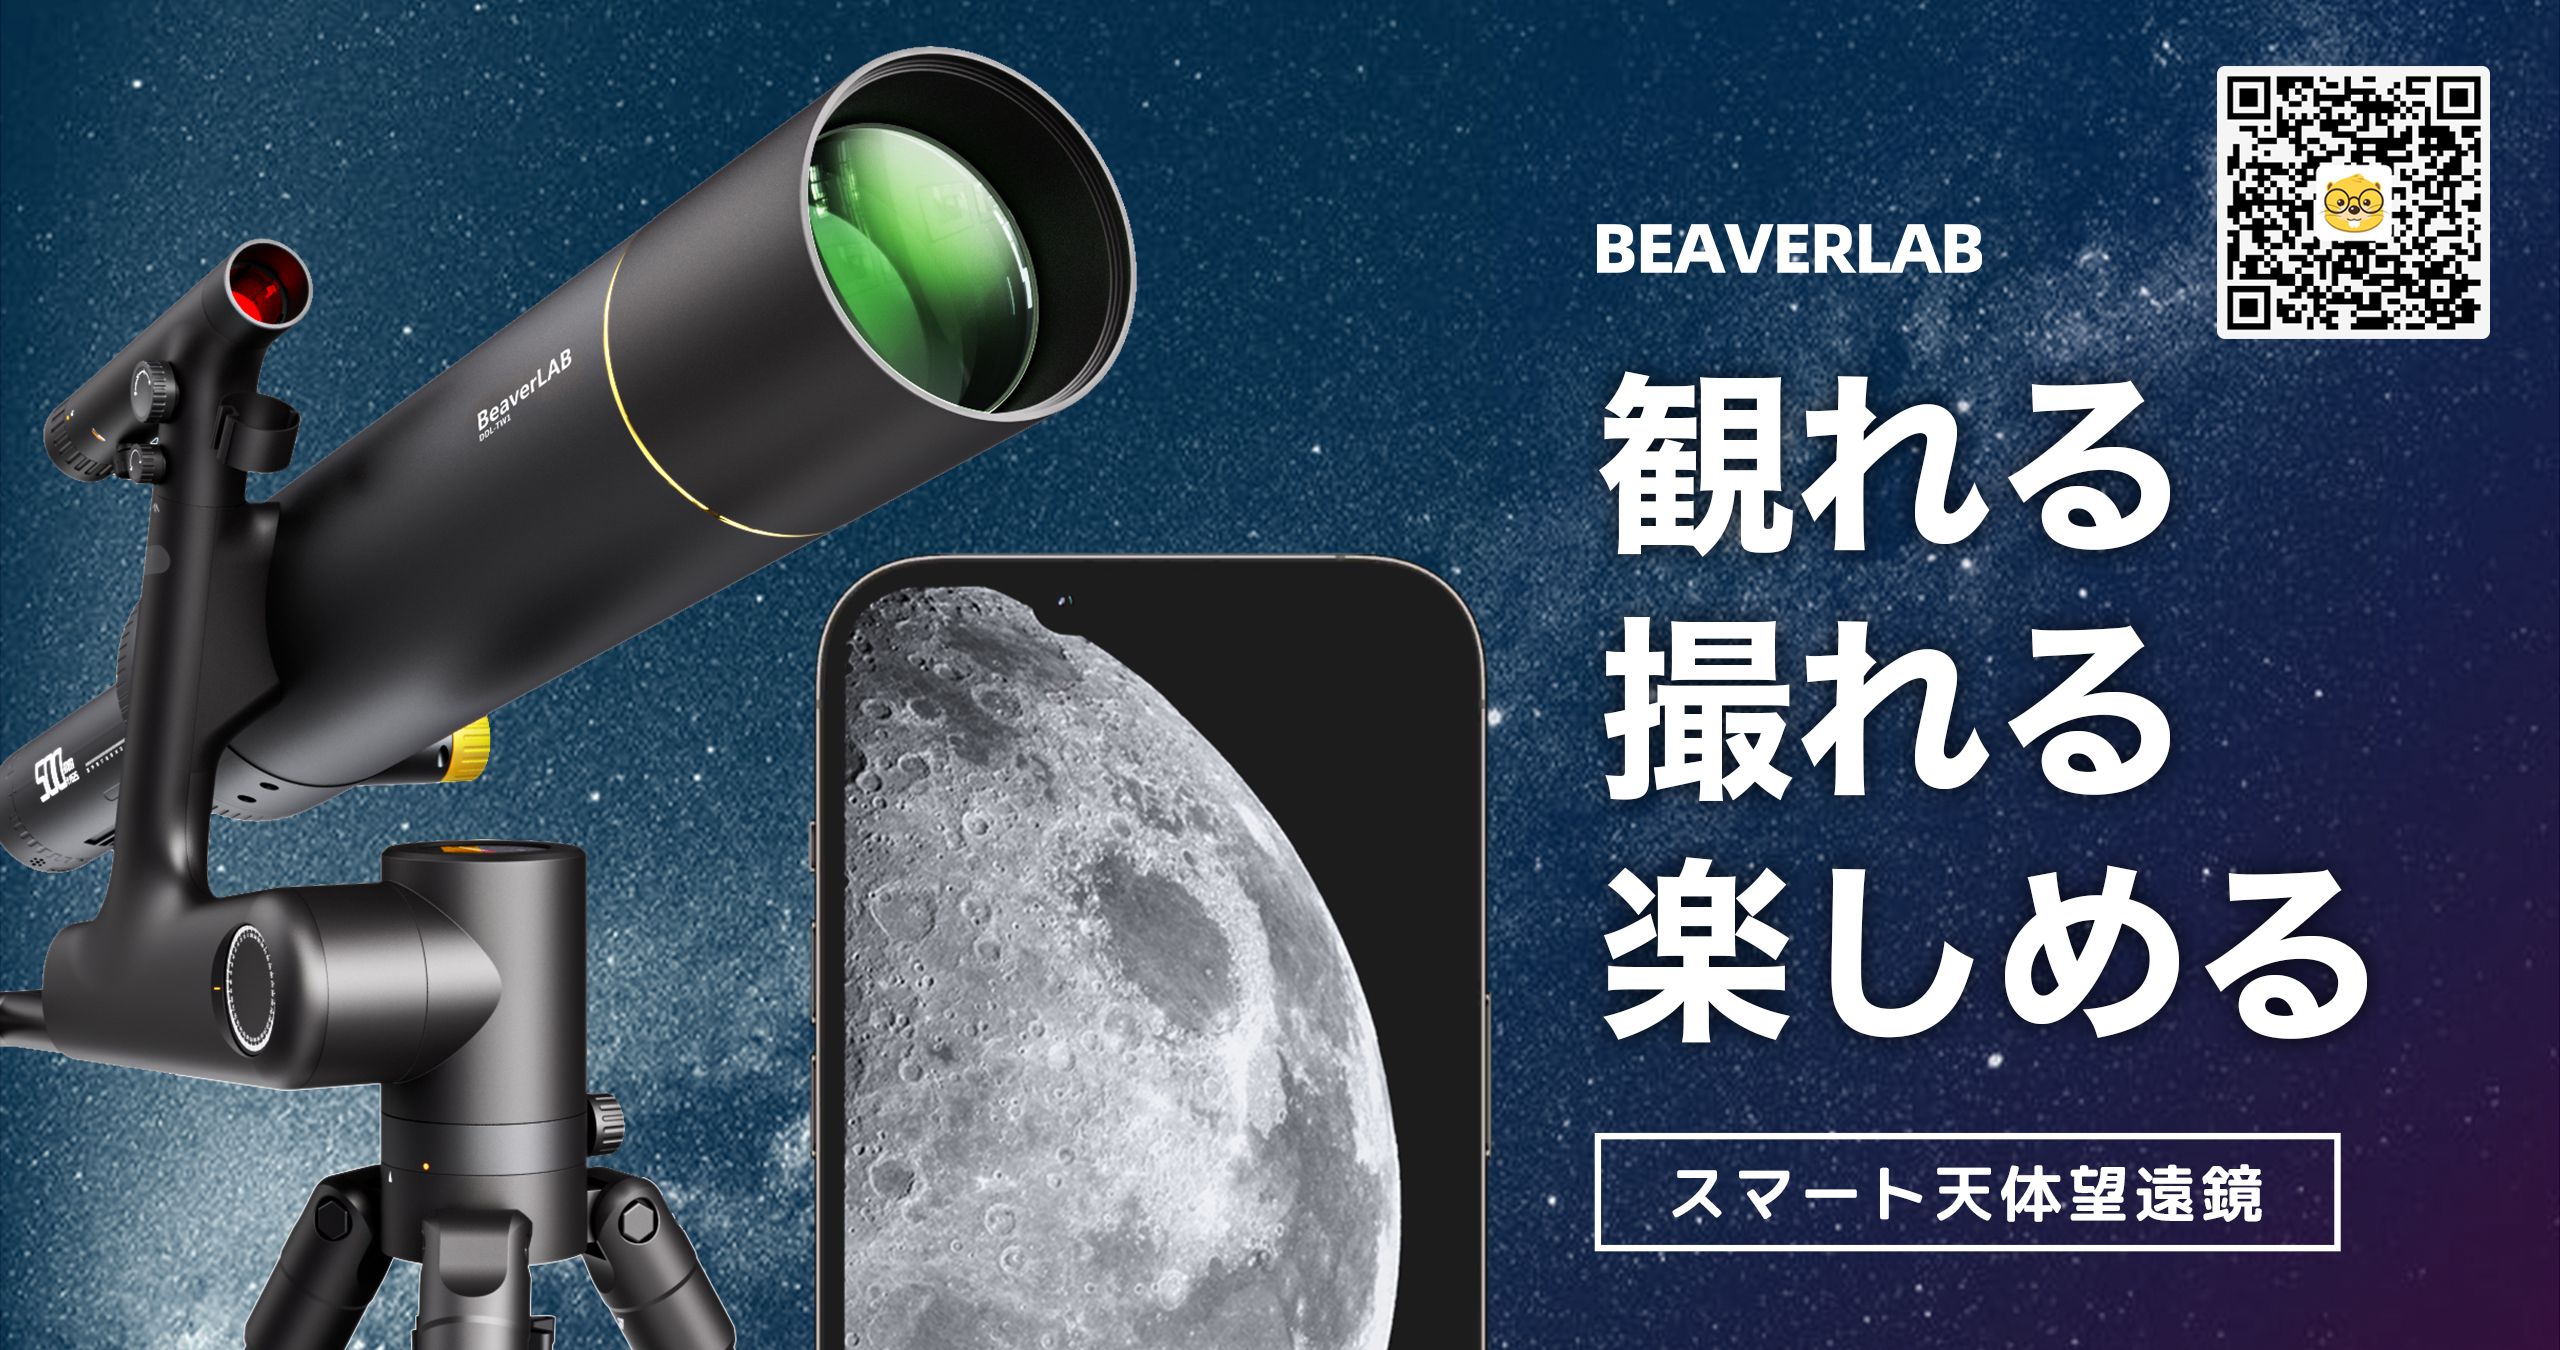 BEAVERLAB（ビーバーラボ）スマート天体望遠鏡 - b8ta Japan